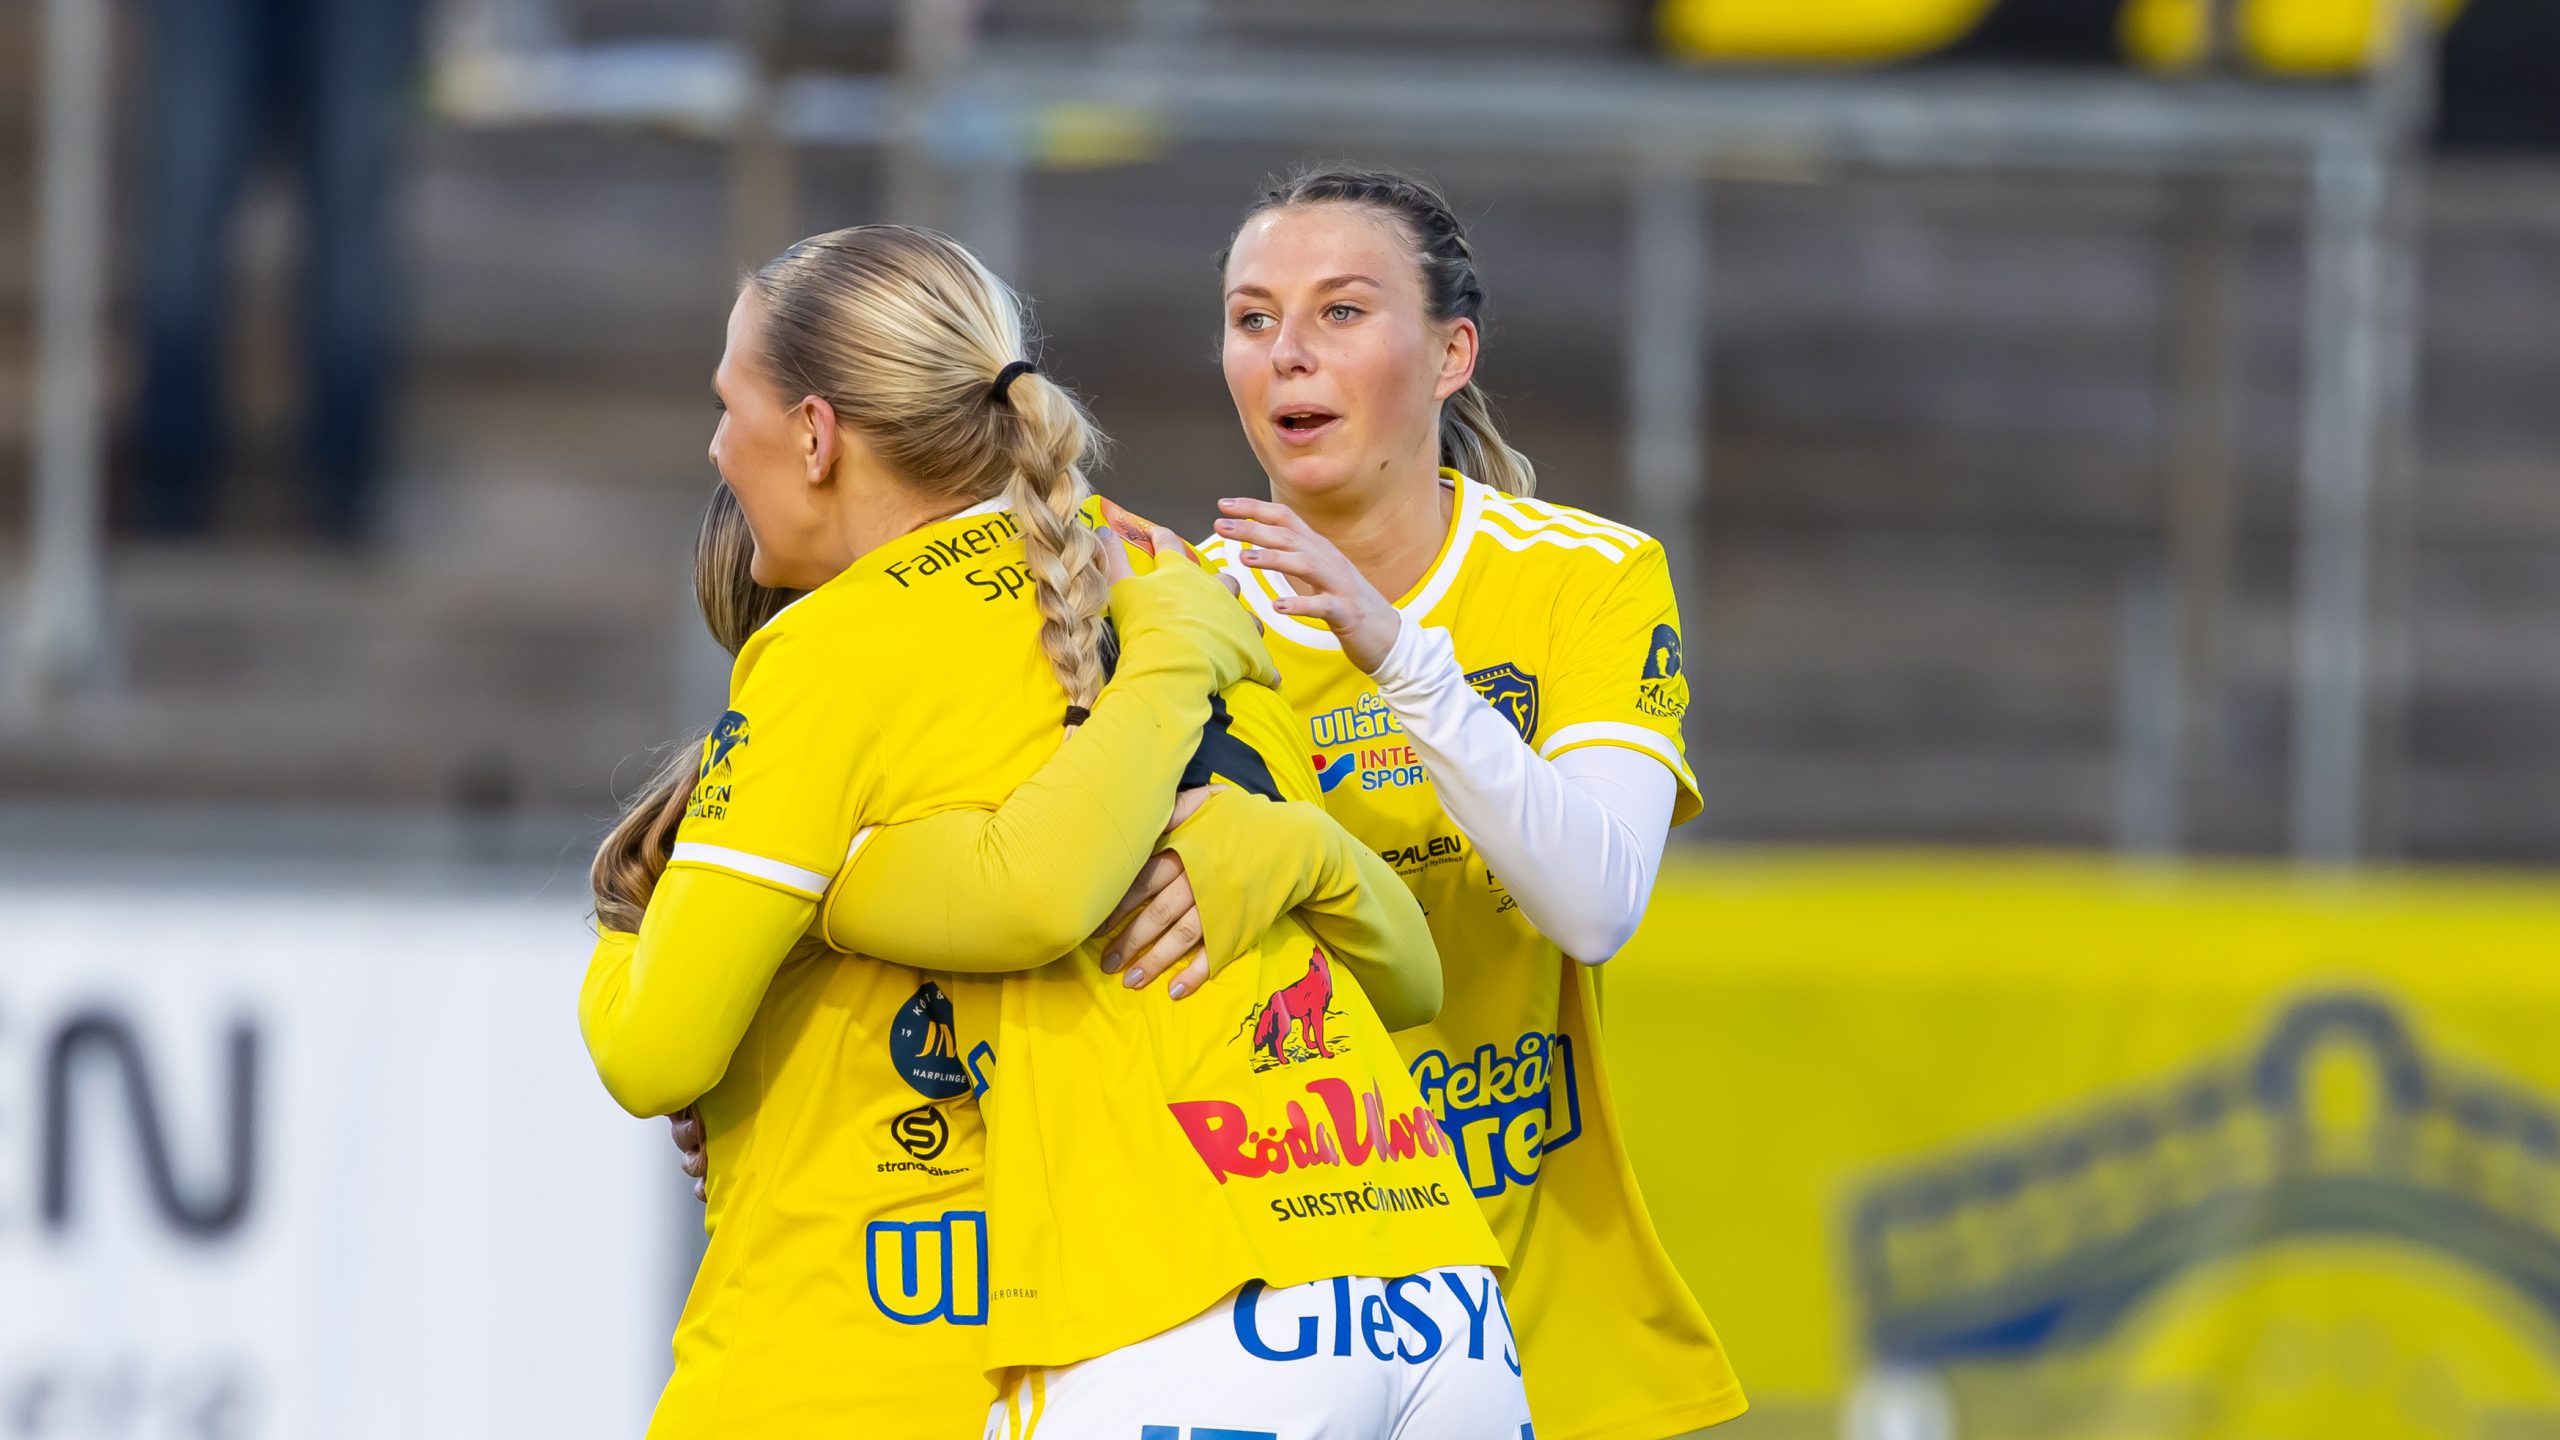 2-1-seger i Laholm: ”Vann trots att vi inte spelade på topp”